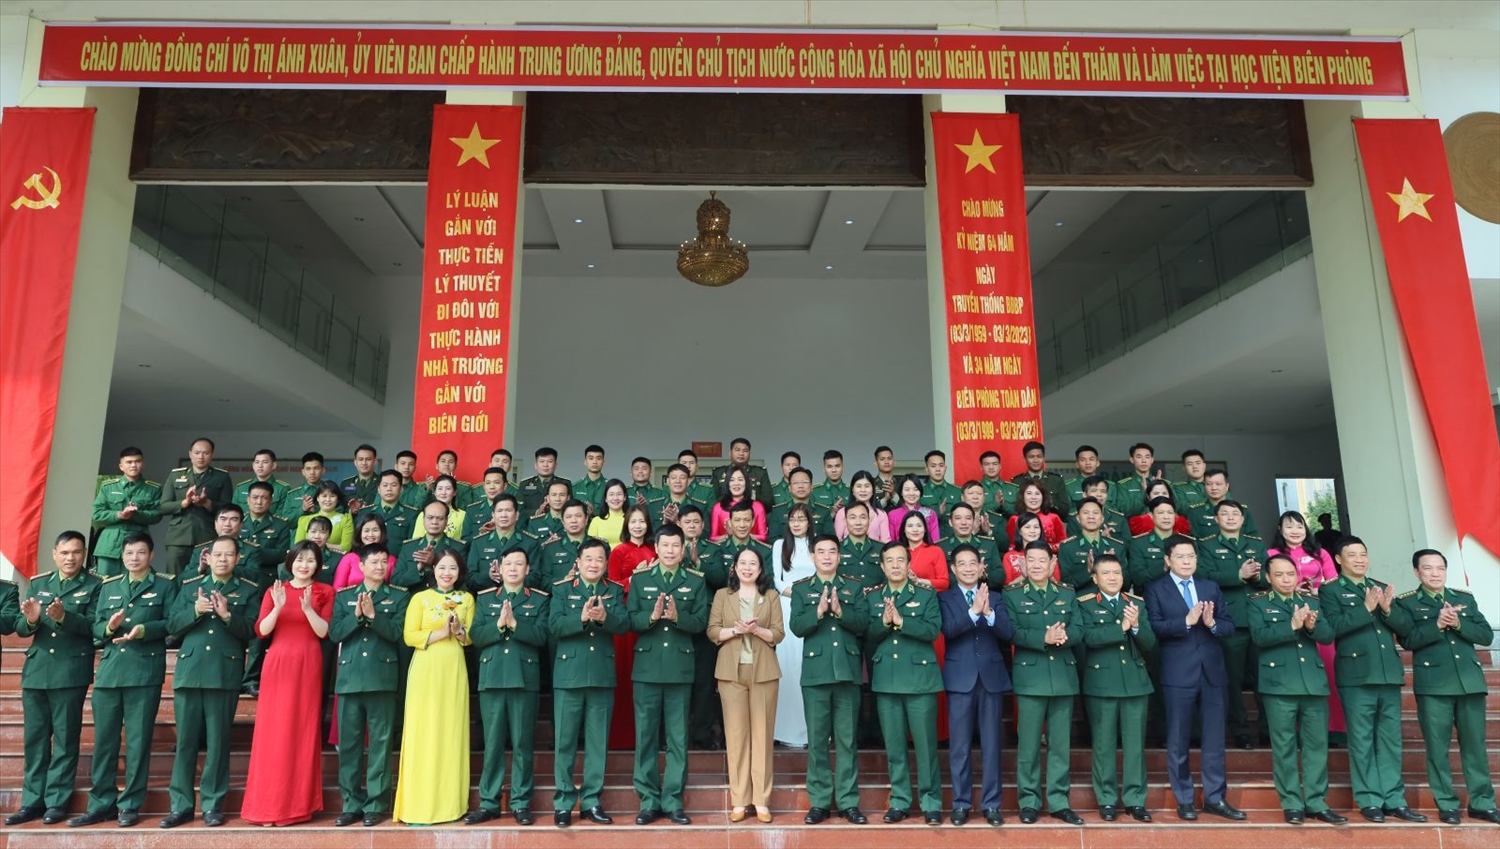 Quyền Chủ tịch nước Võ Thị Ánh Xuân cùng cán bộ, chiến sĩ, học viên Học viện Biên phòng. Ảnh: VPCTN